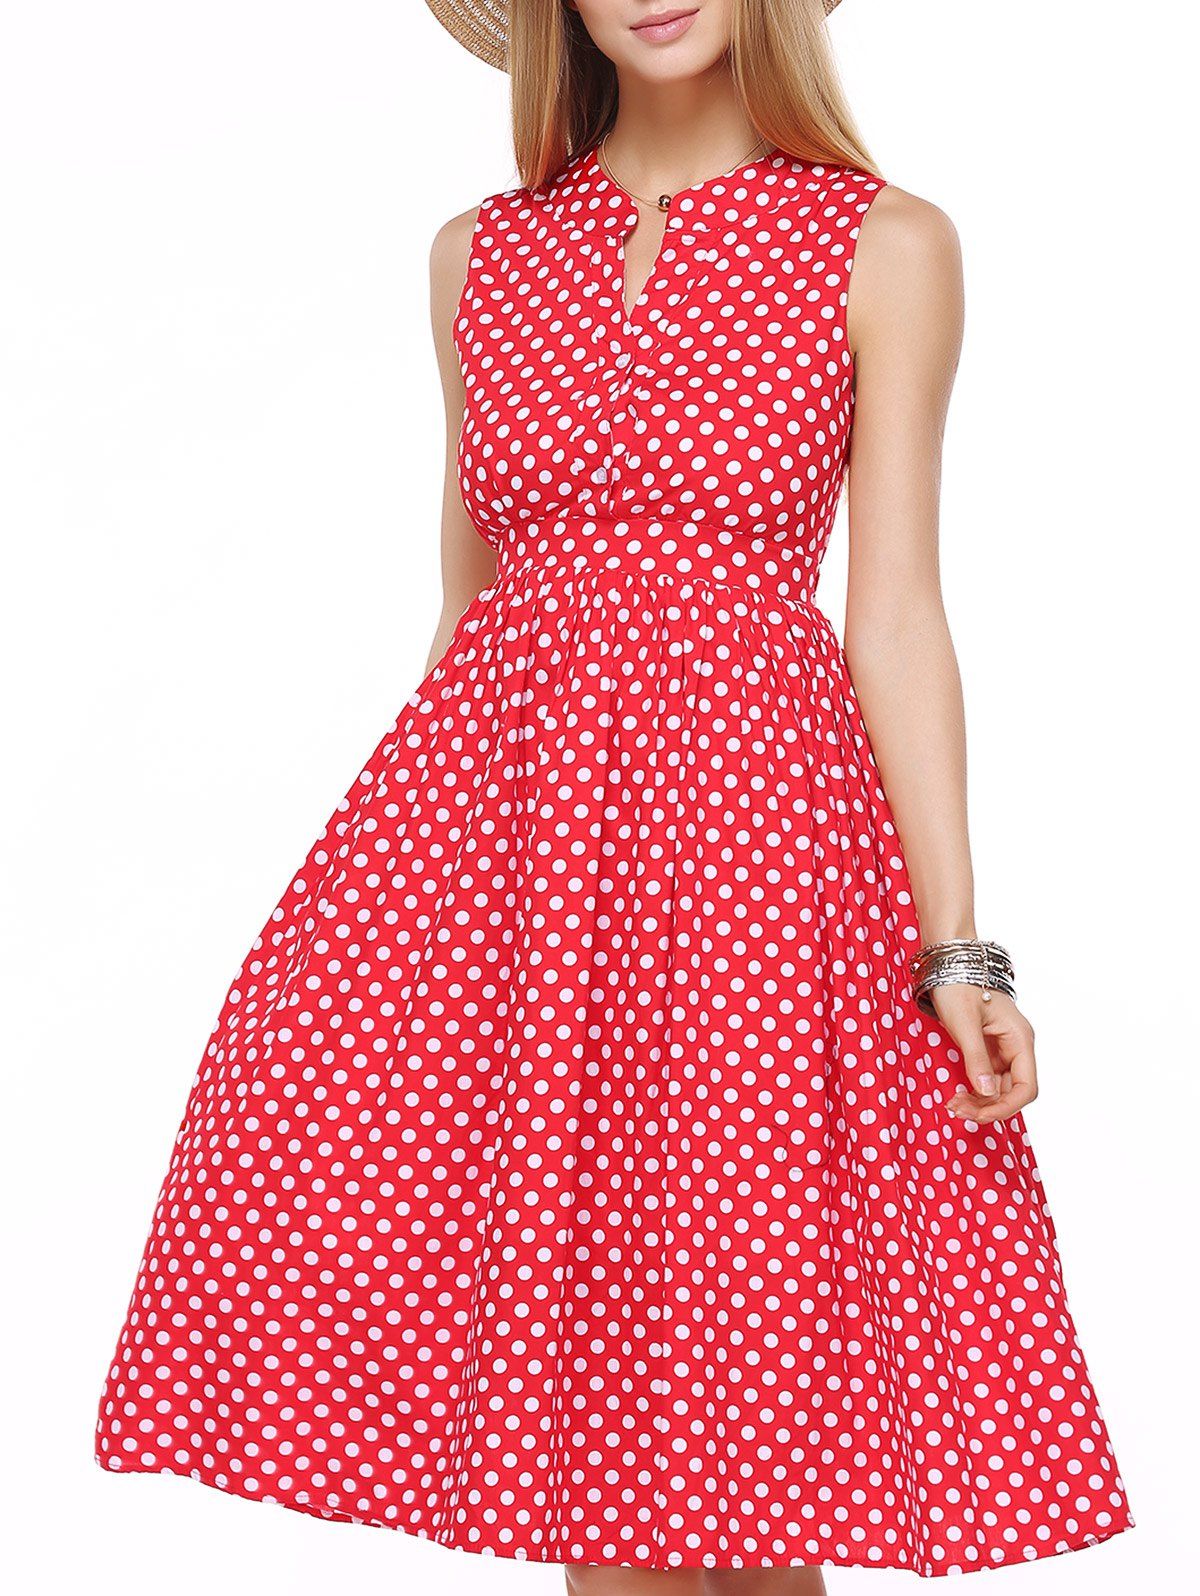 [39% OFF] Vinatge Women's Polka Dot High Waisted Shirt Dress | Rosegal